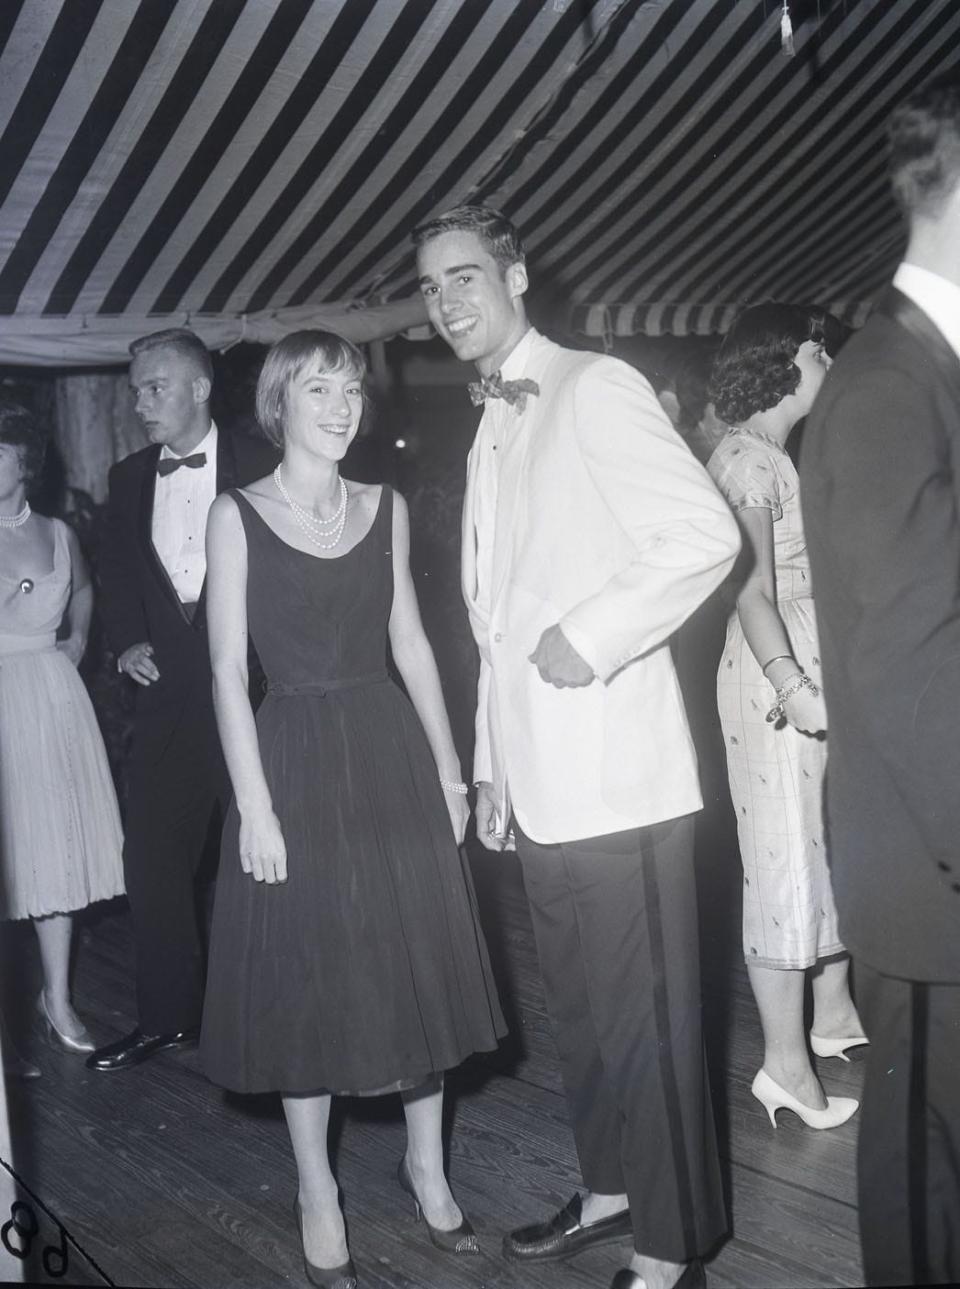 Sean Flynn with fellow Palm Beach teen Bettina Bancroft at a 1959 Palm Beach dinner party.